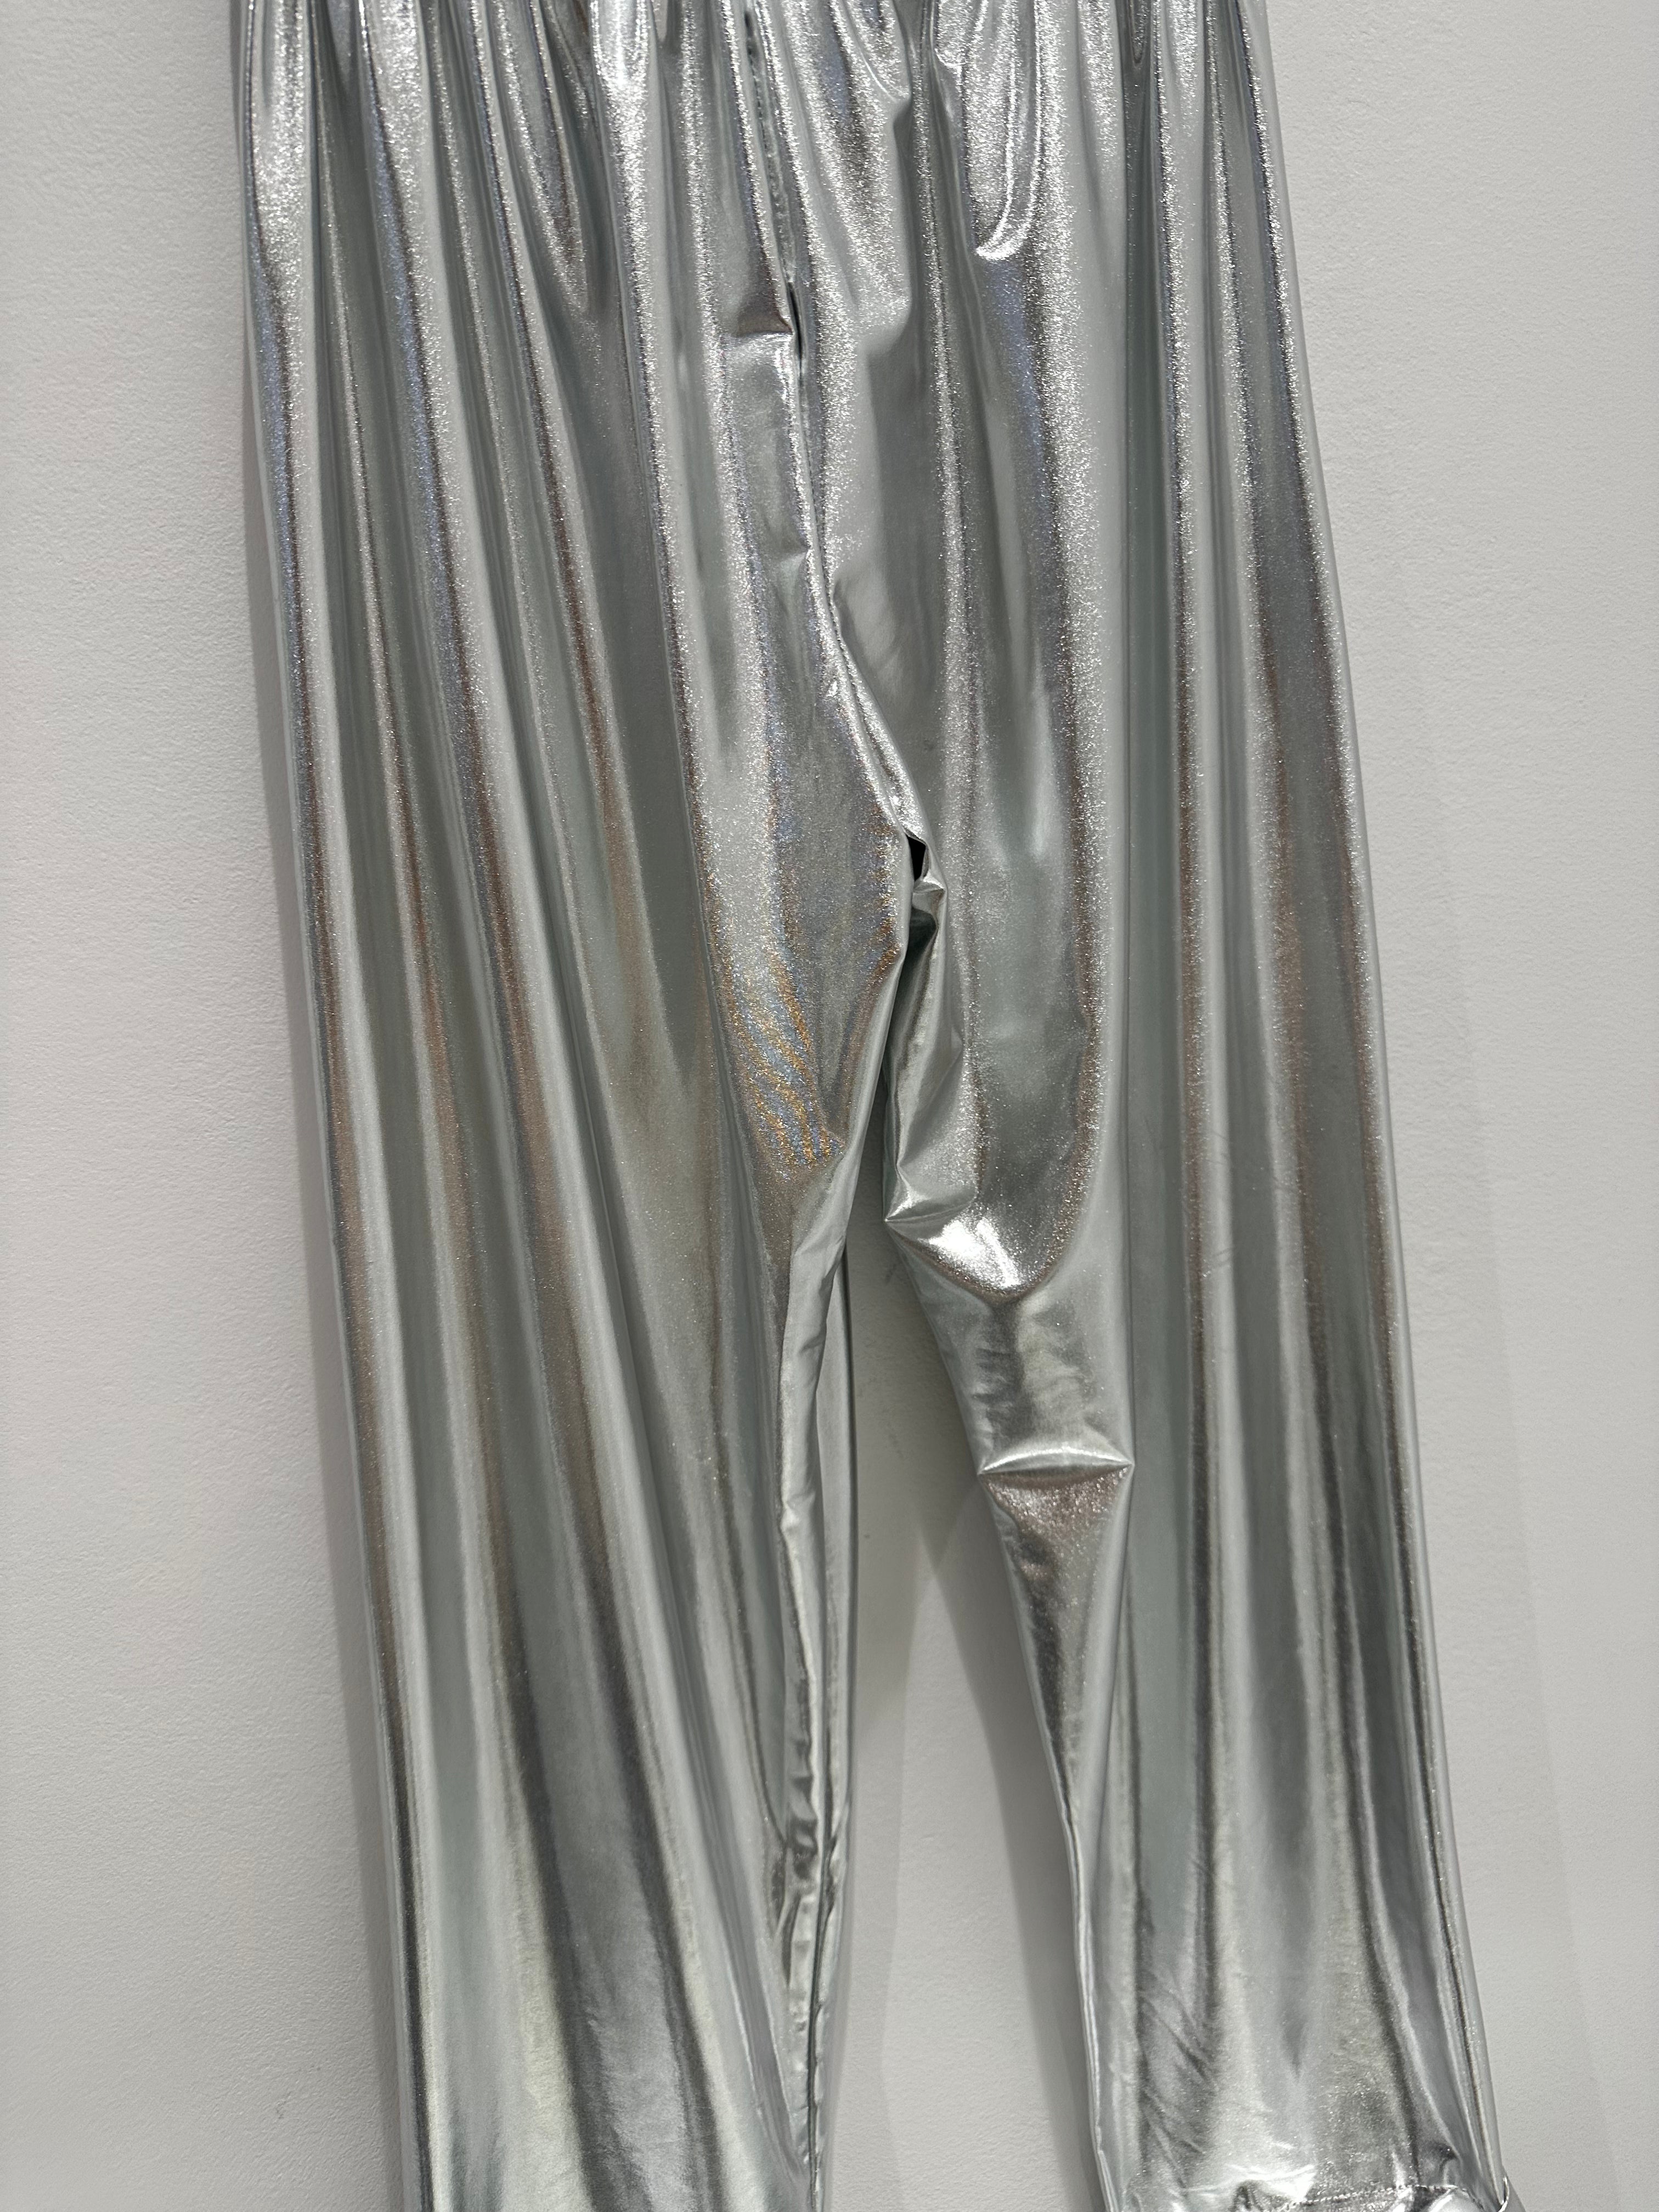 Calças metalizadas maleáveis com elástico à cintura apresentados by Tanzanna prata metalizado.